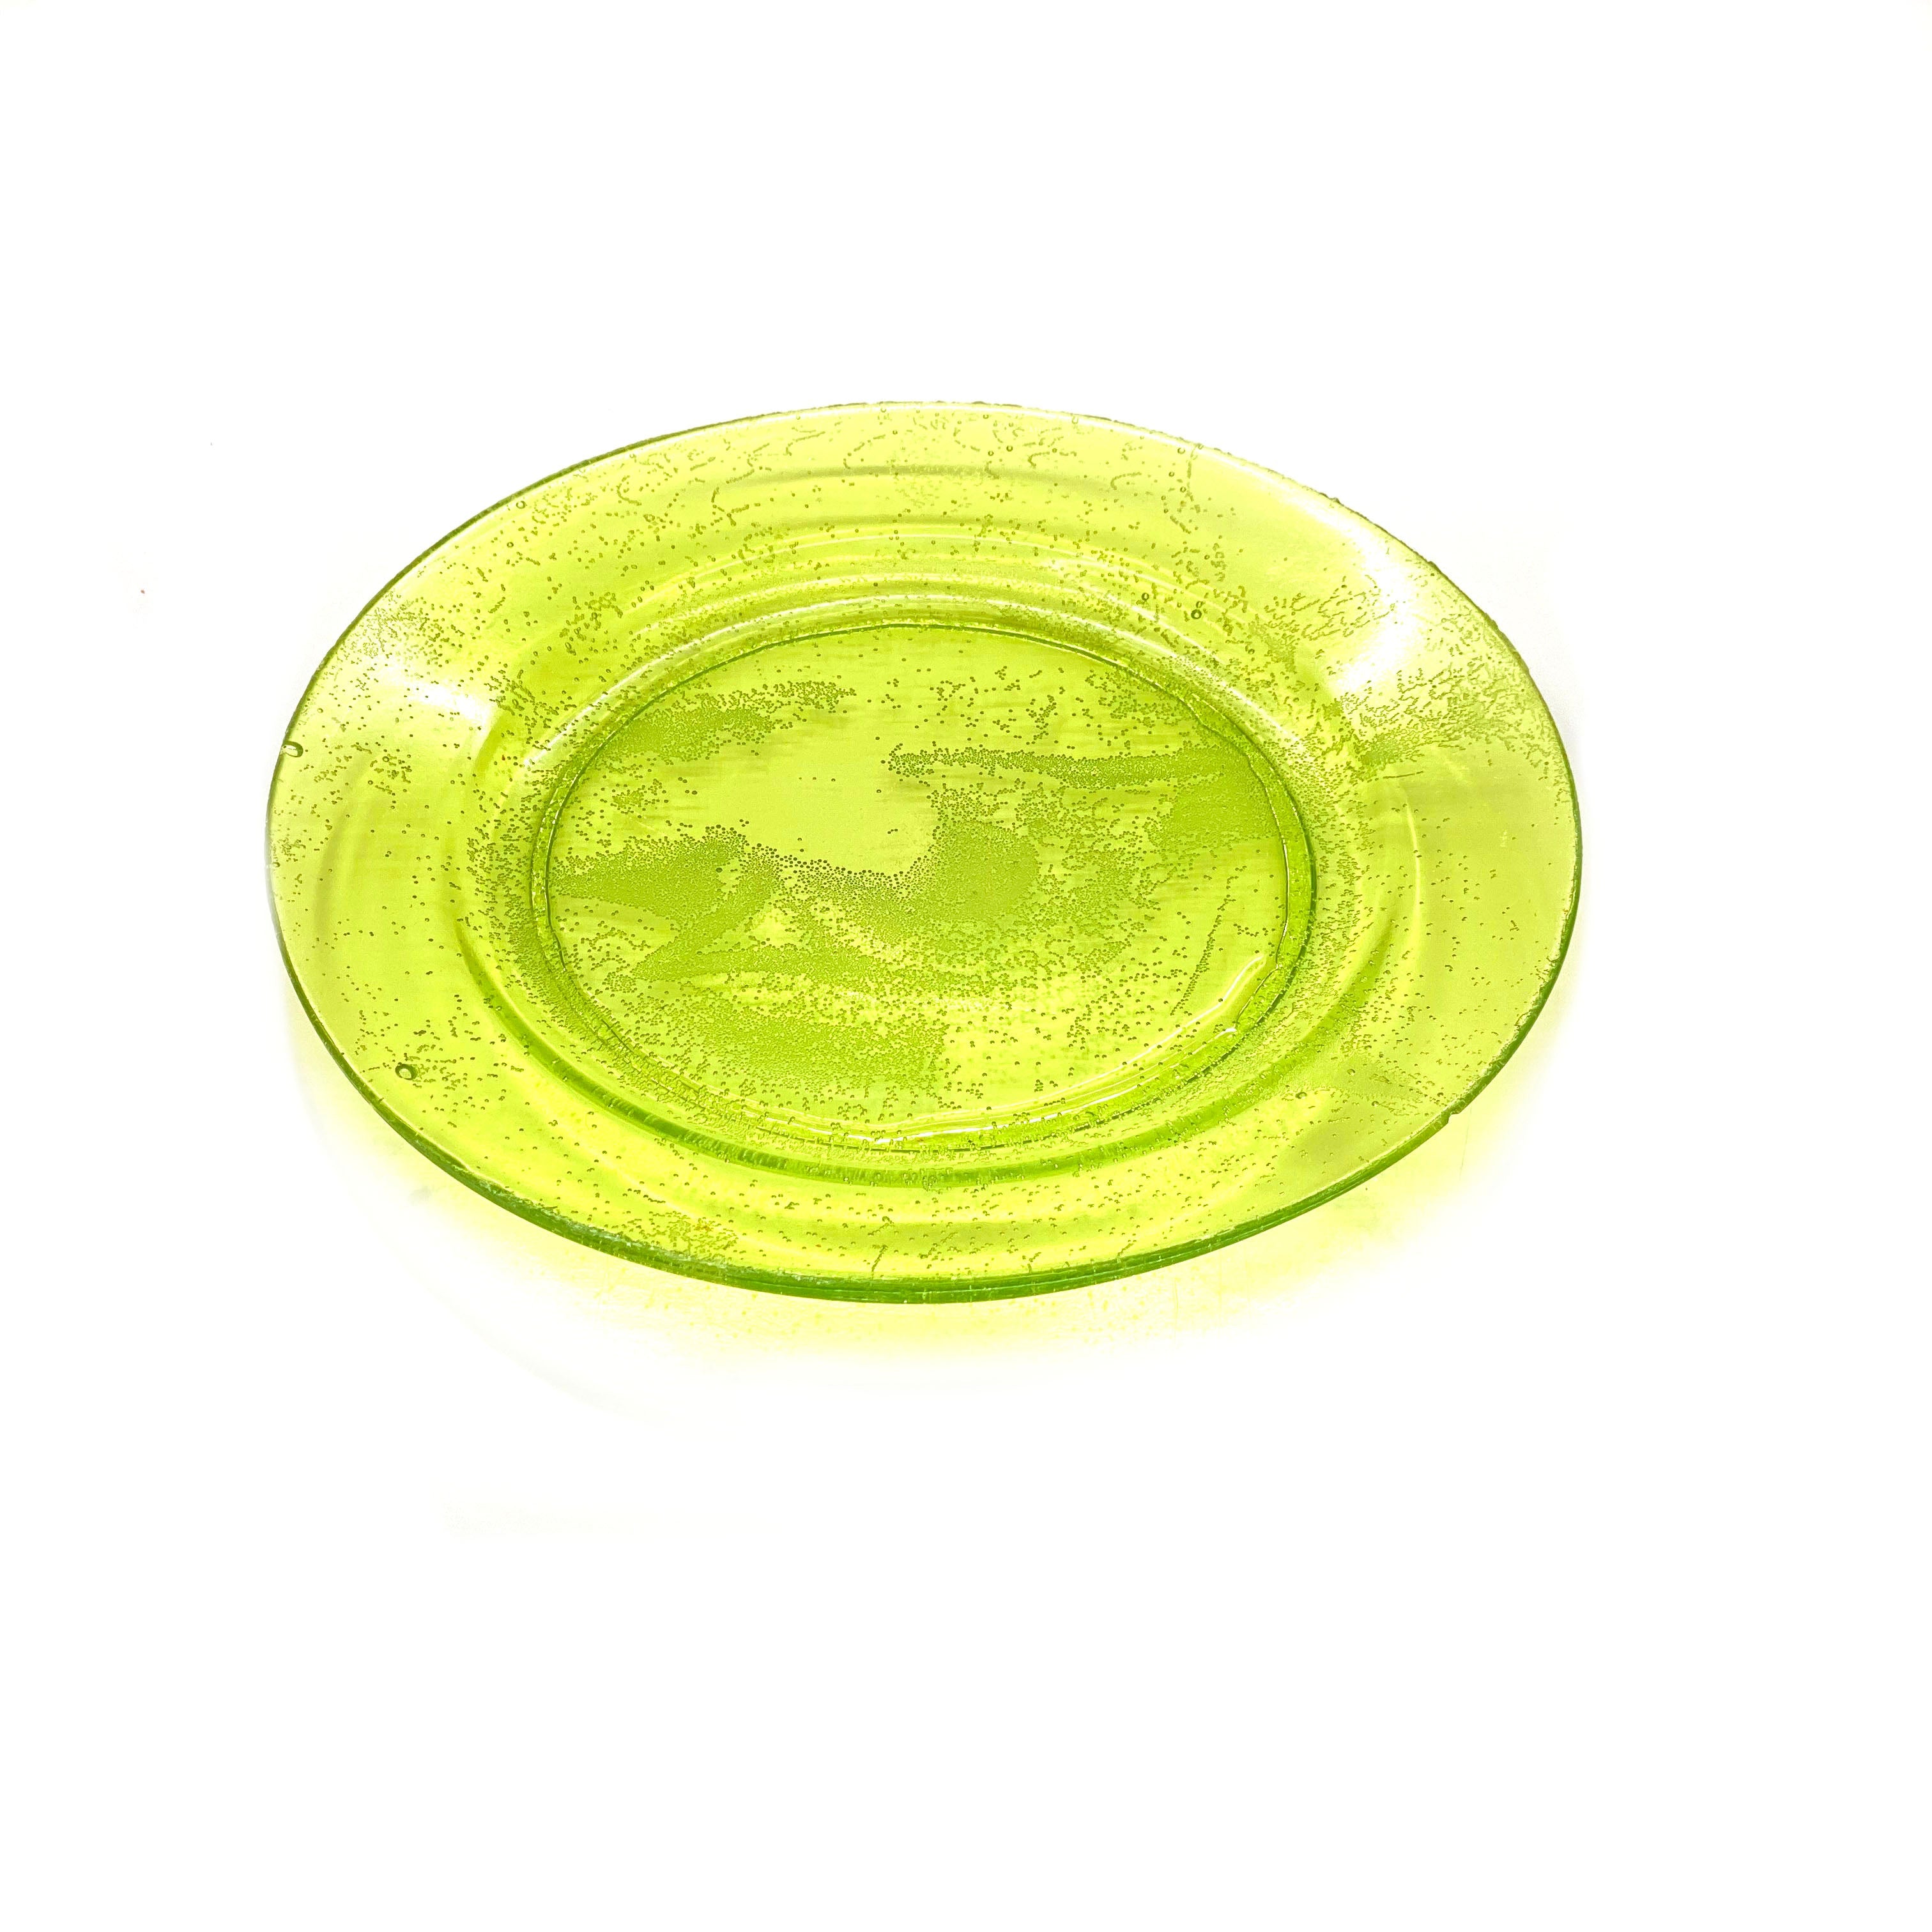 SMASHProps Breakaway Medium Dinner Plate - LIGHT GREEN translucent - Light Green,Translucent